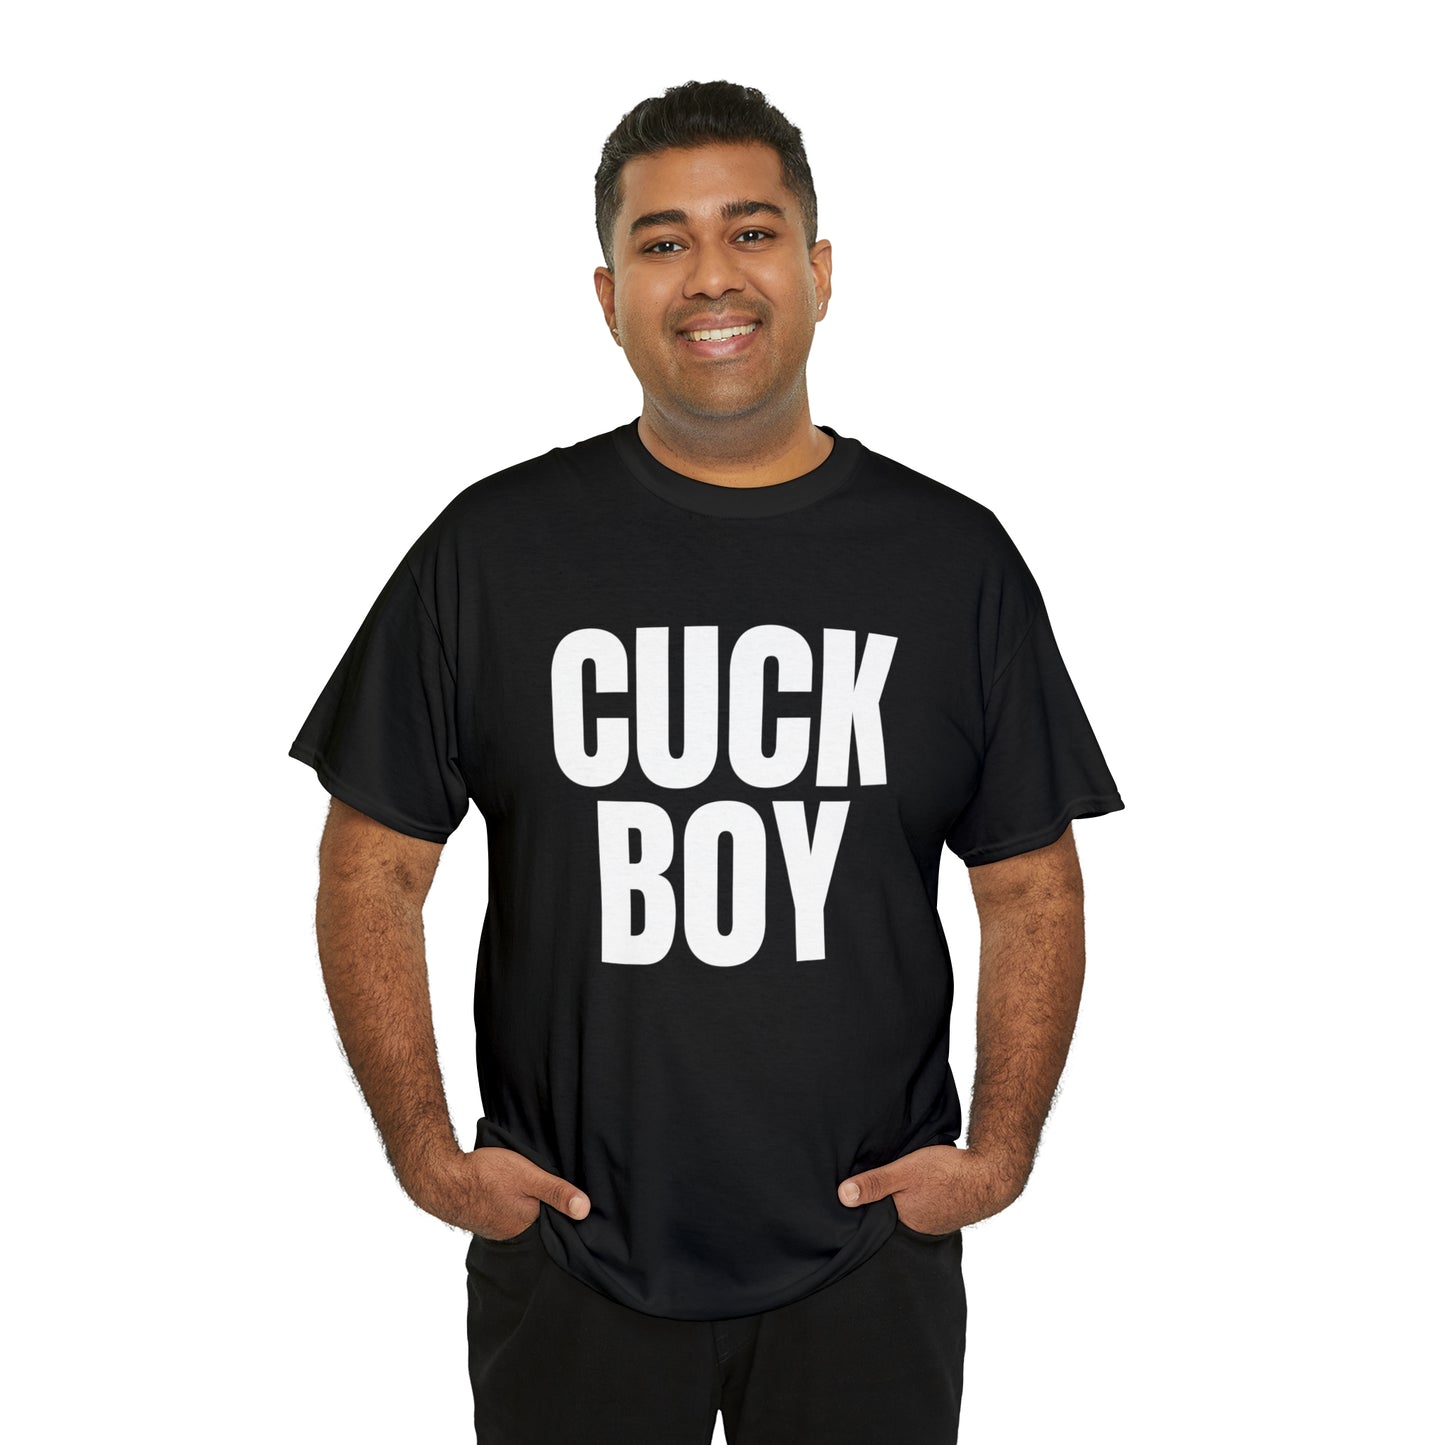 Cuck Boy